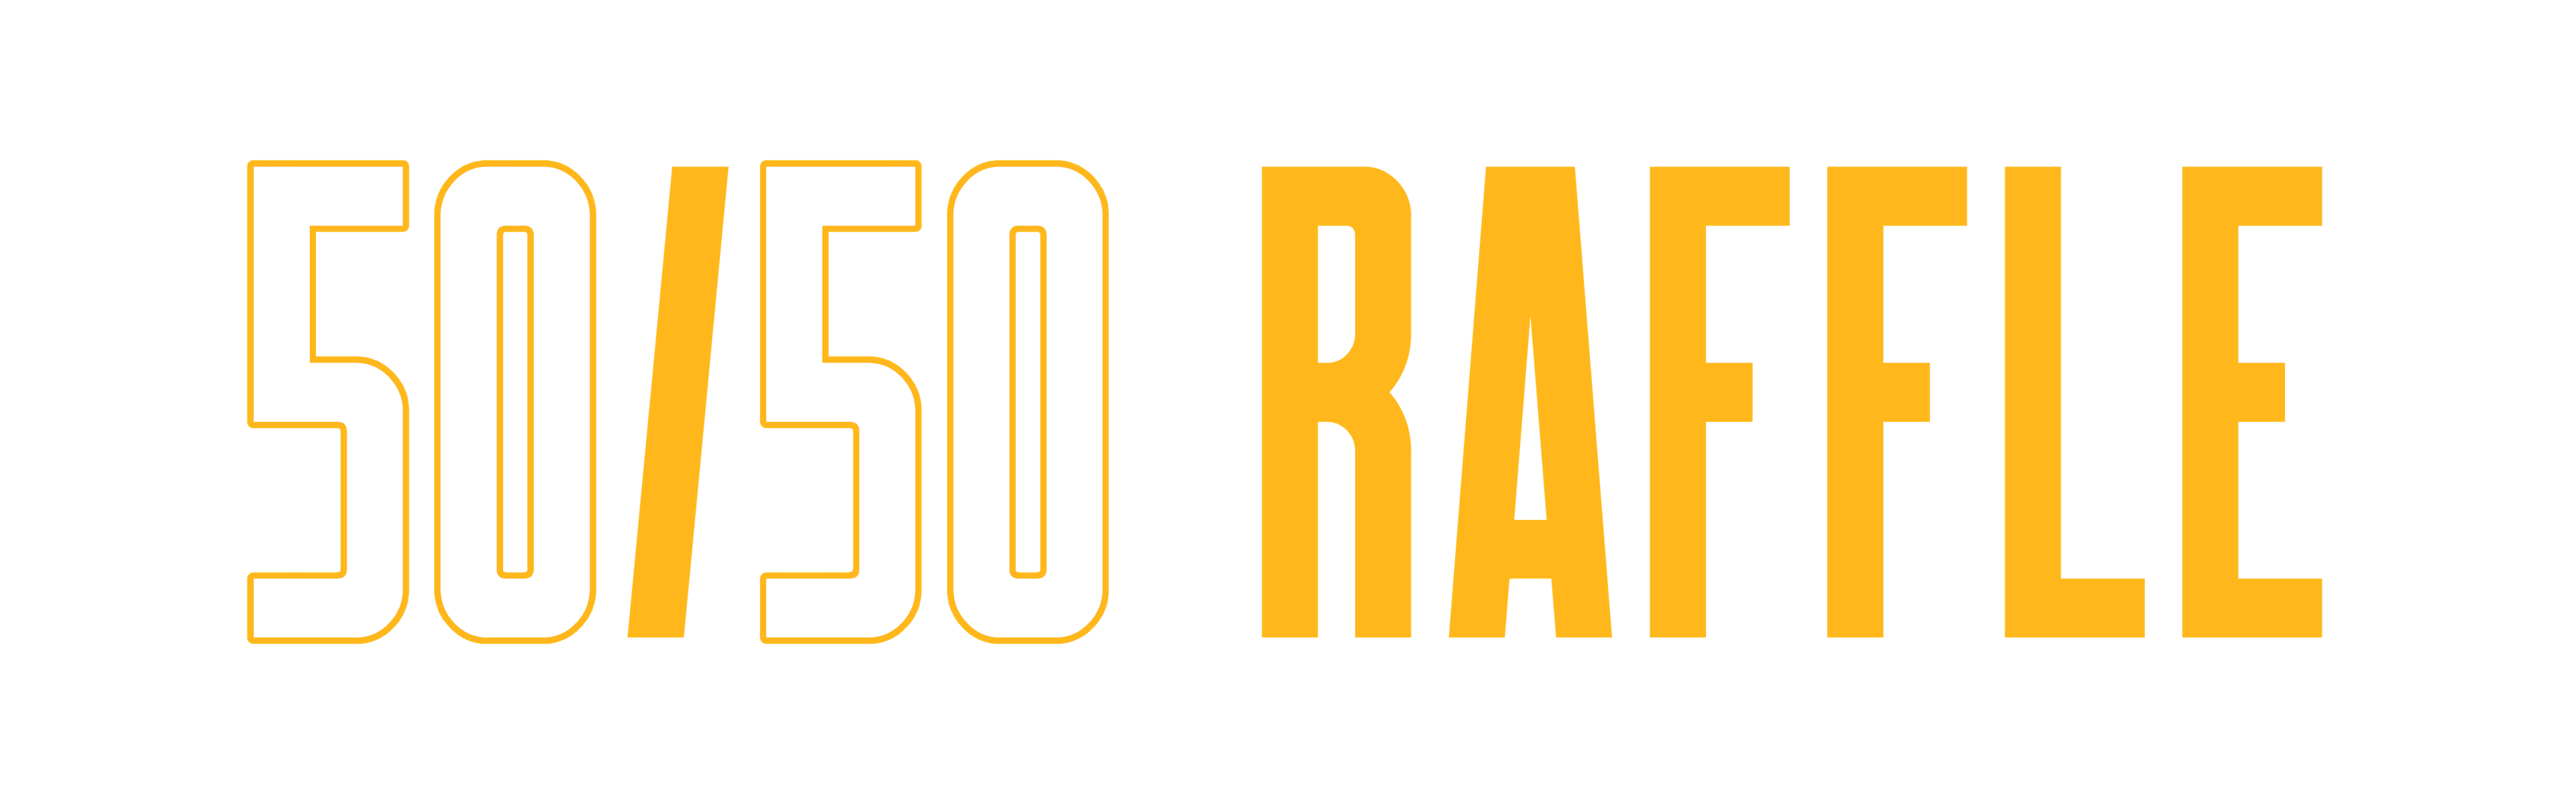 Sabres Fan Appreciation Rollover Raffle logo image